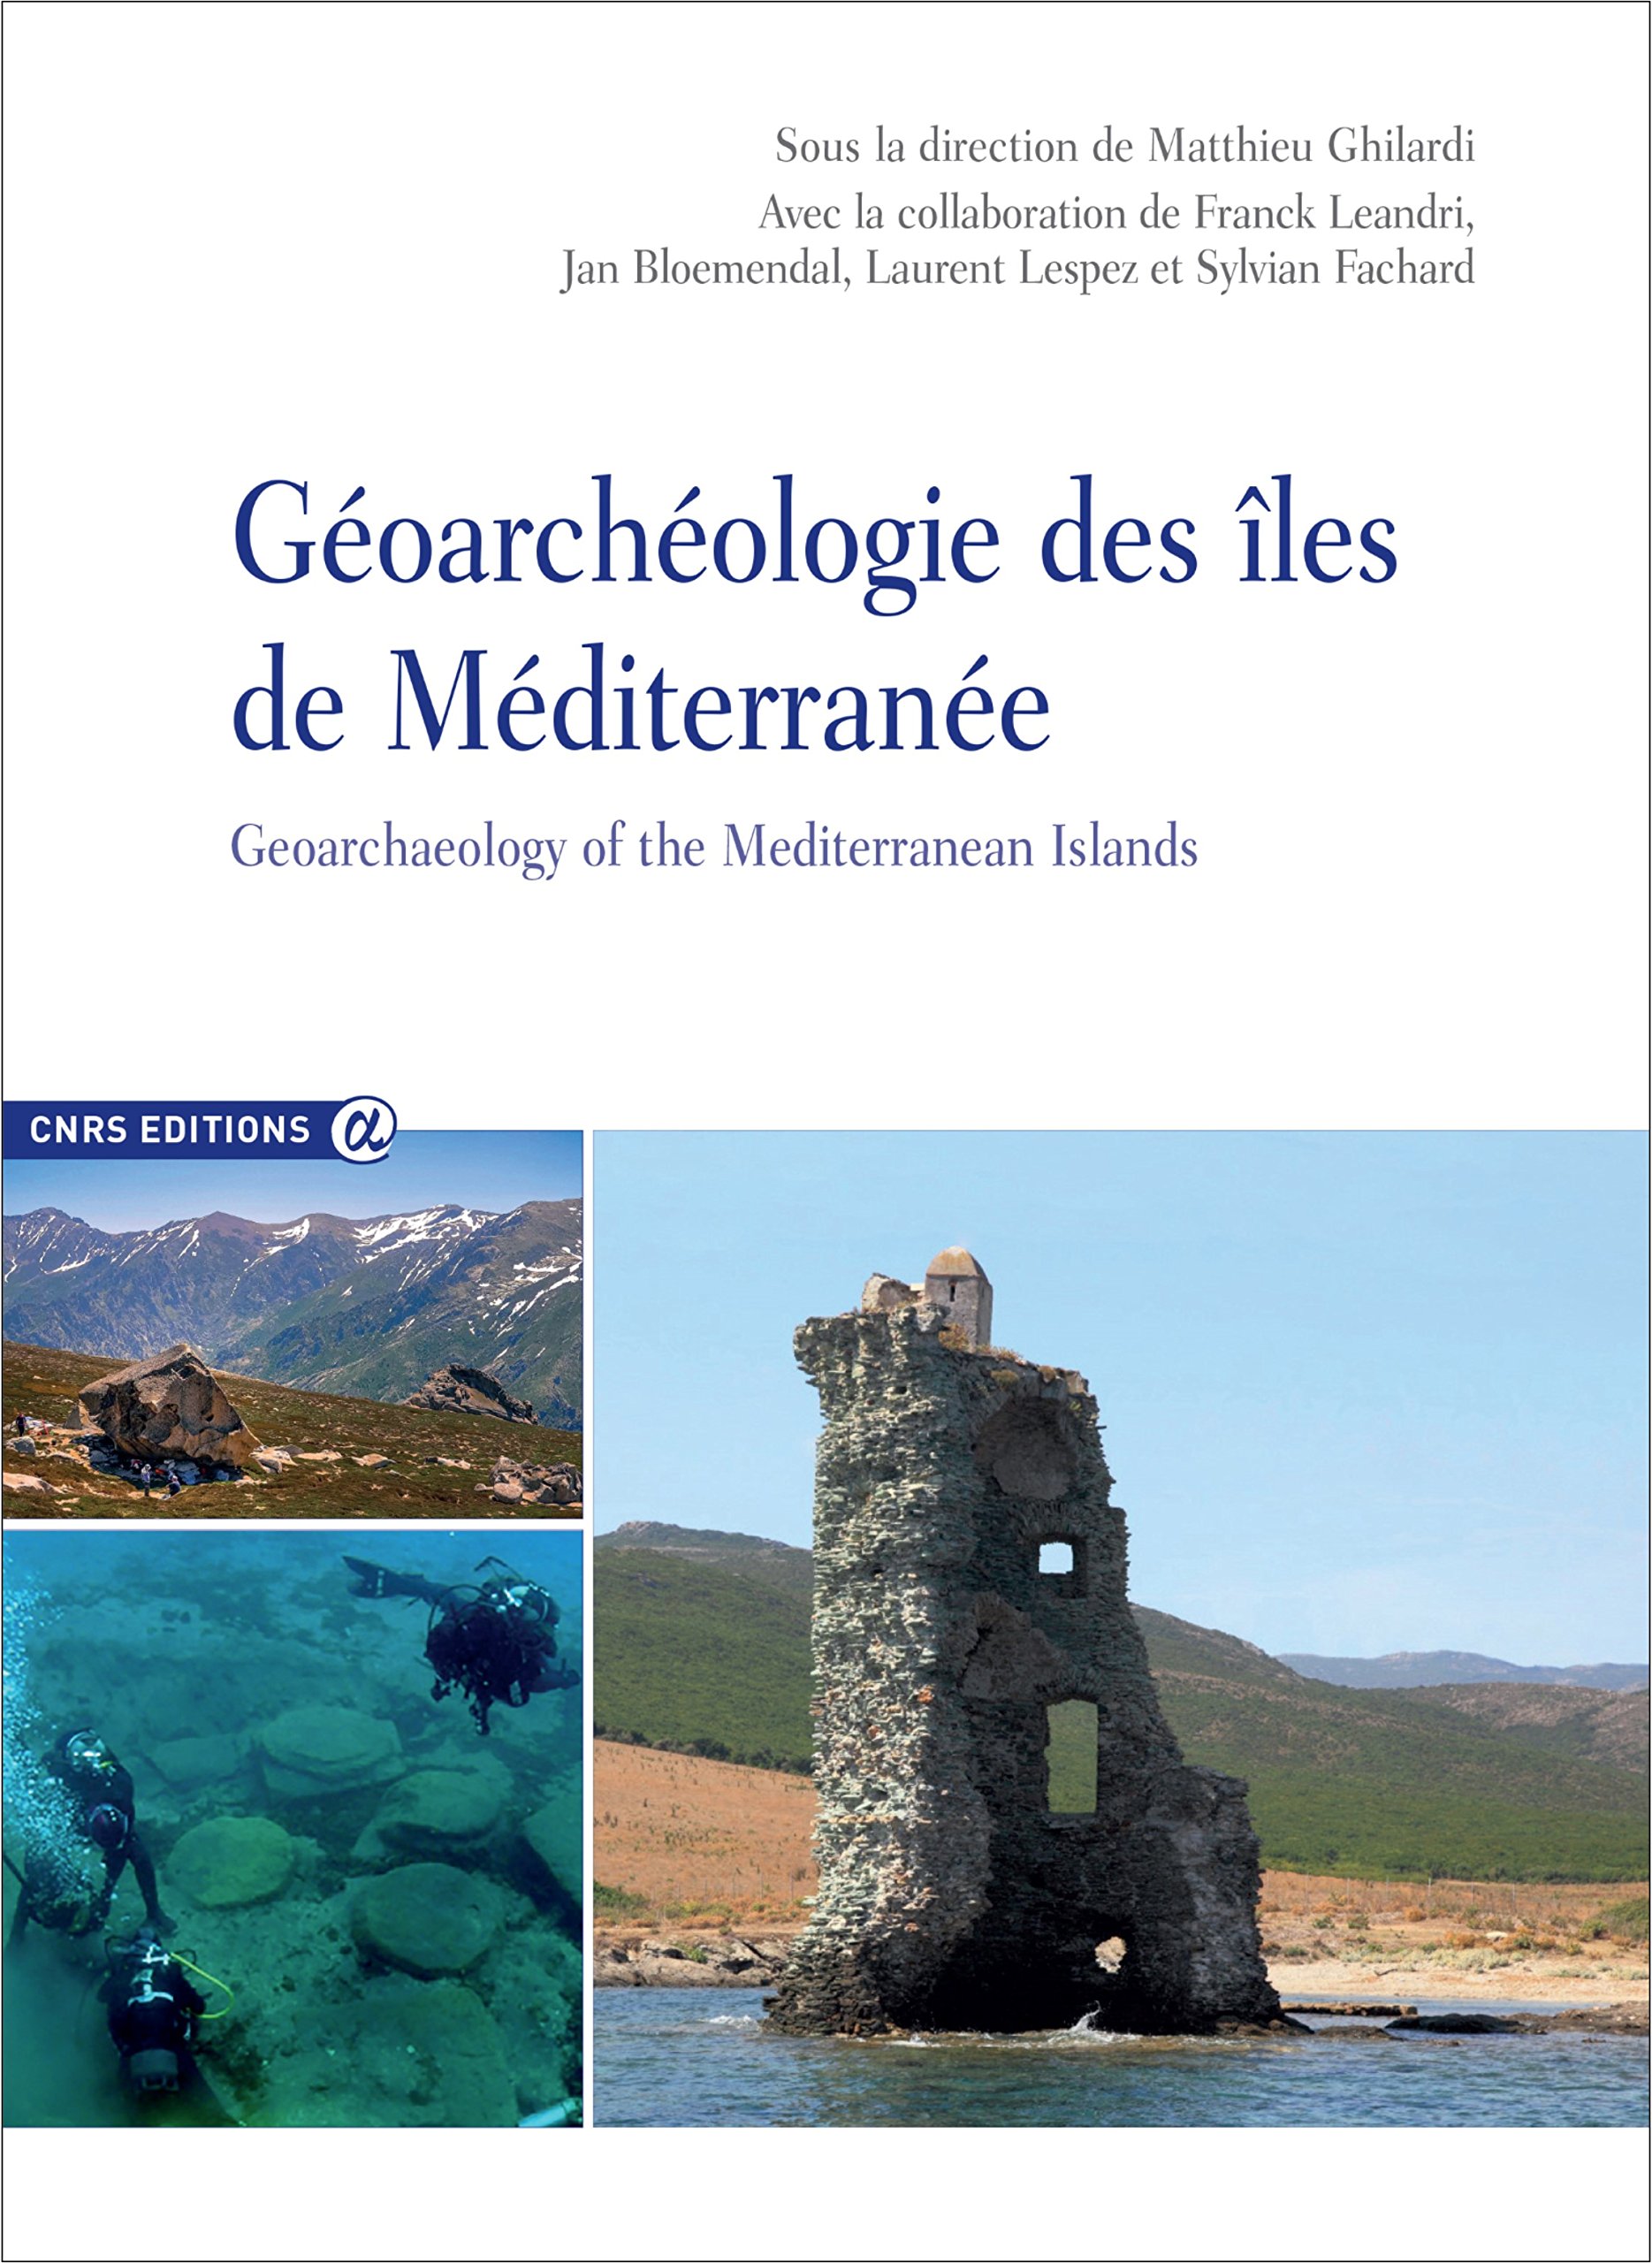 Géoarchéologie des îles de Méditerranée / Geoarchaeology of the Mediterranean Islands, 2016, 344 p.